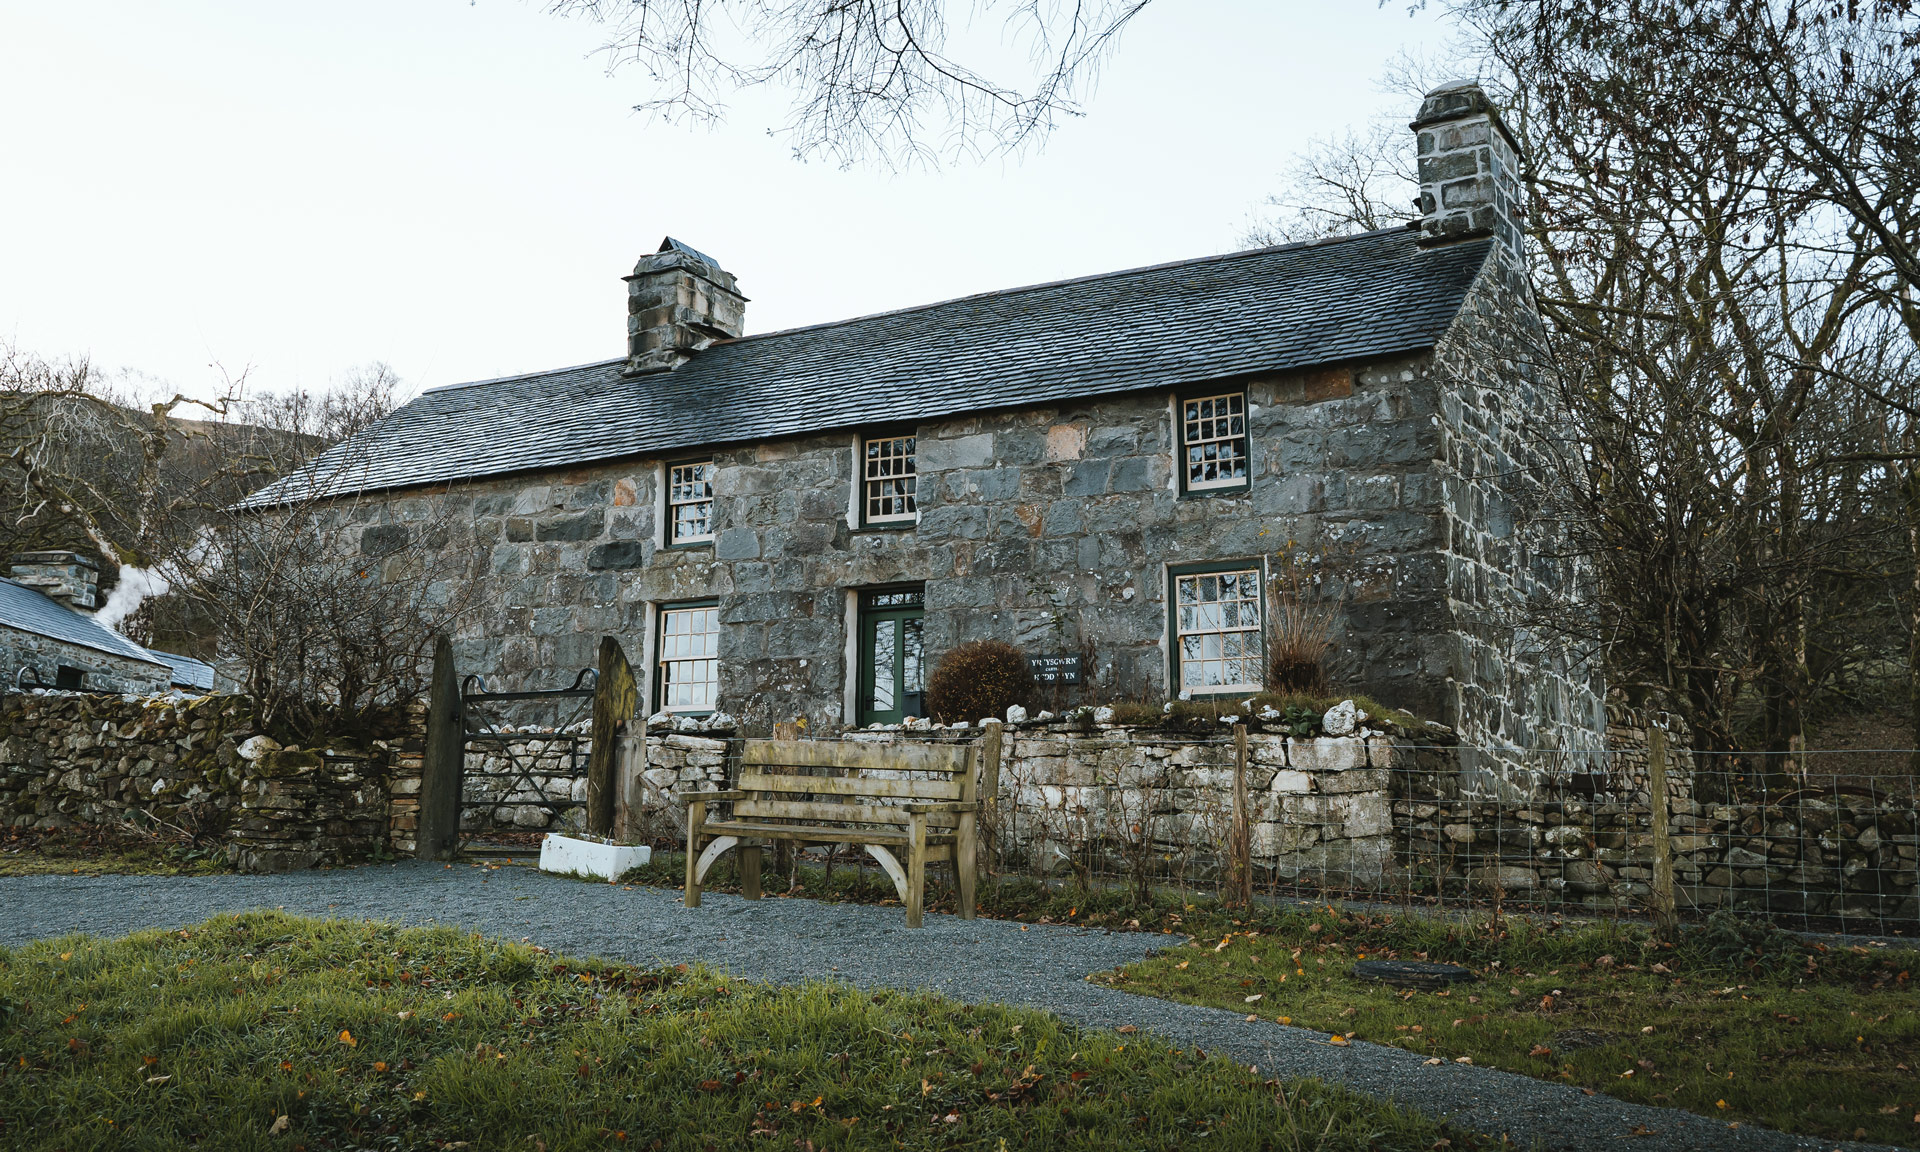 Yr Ysgwrn farmhouse on an autumnal day